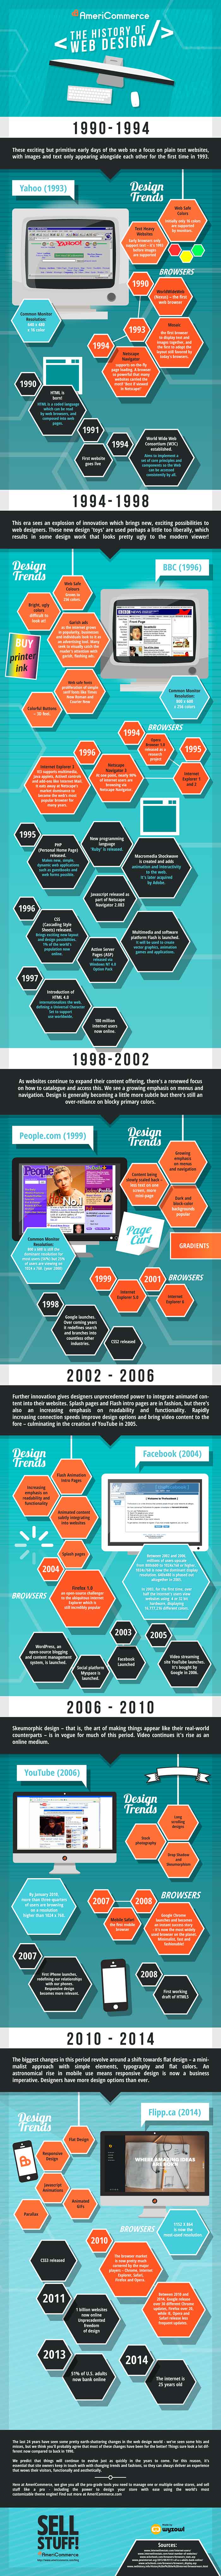 Infografia sobre la historia del diseño web